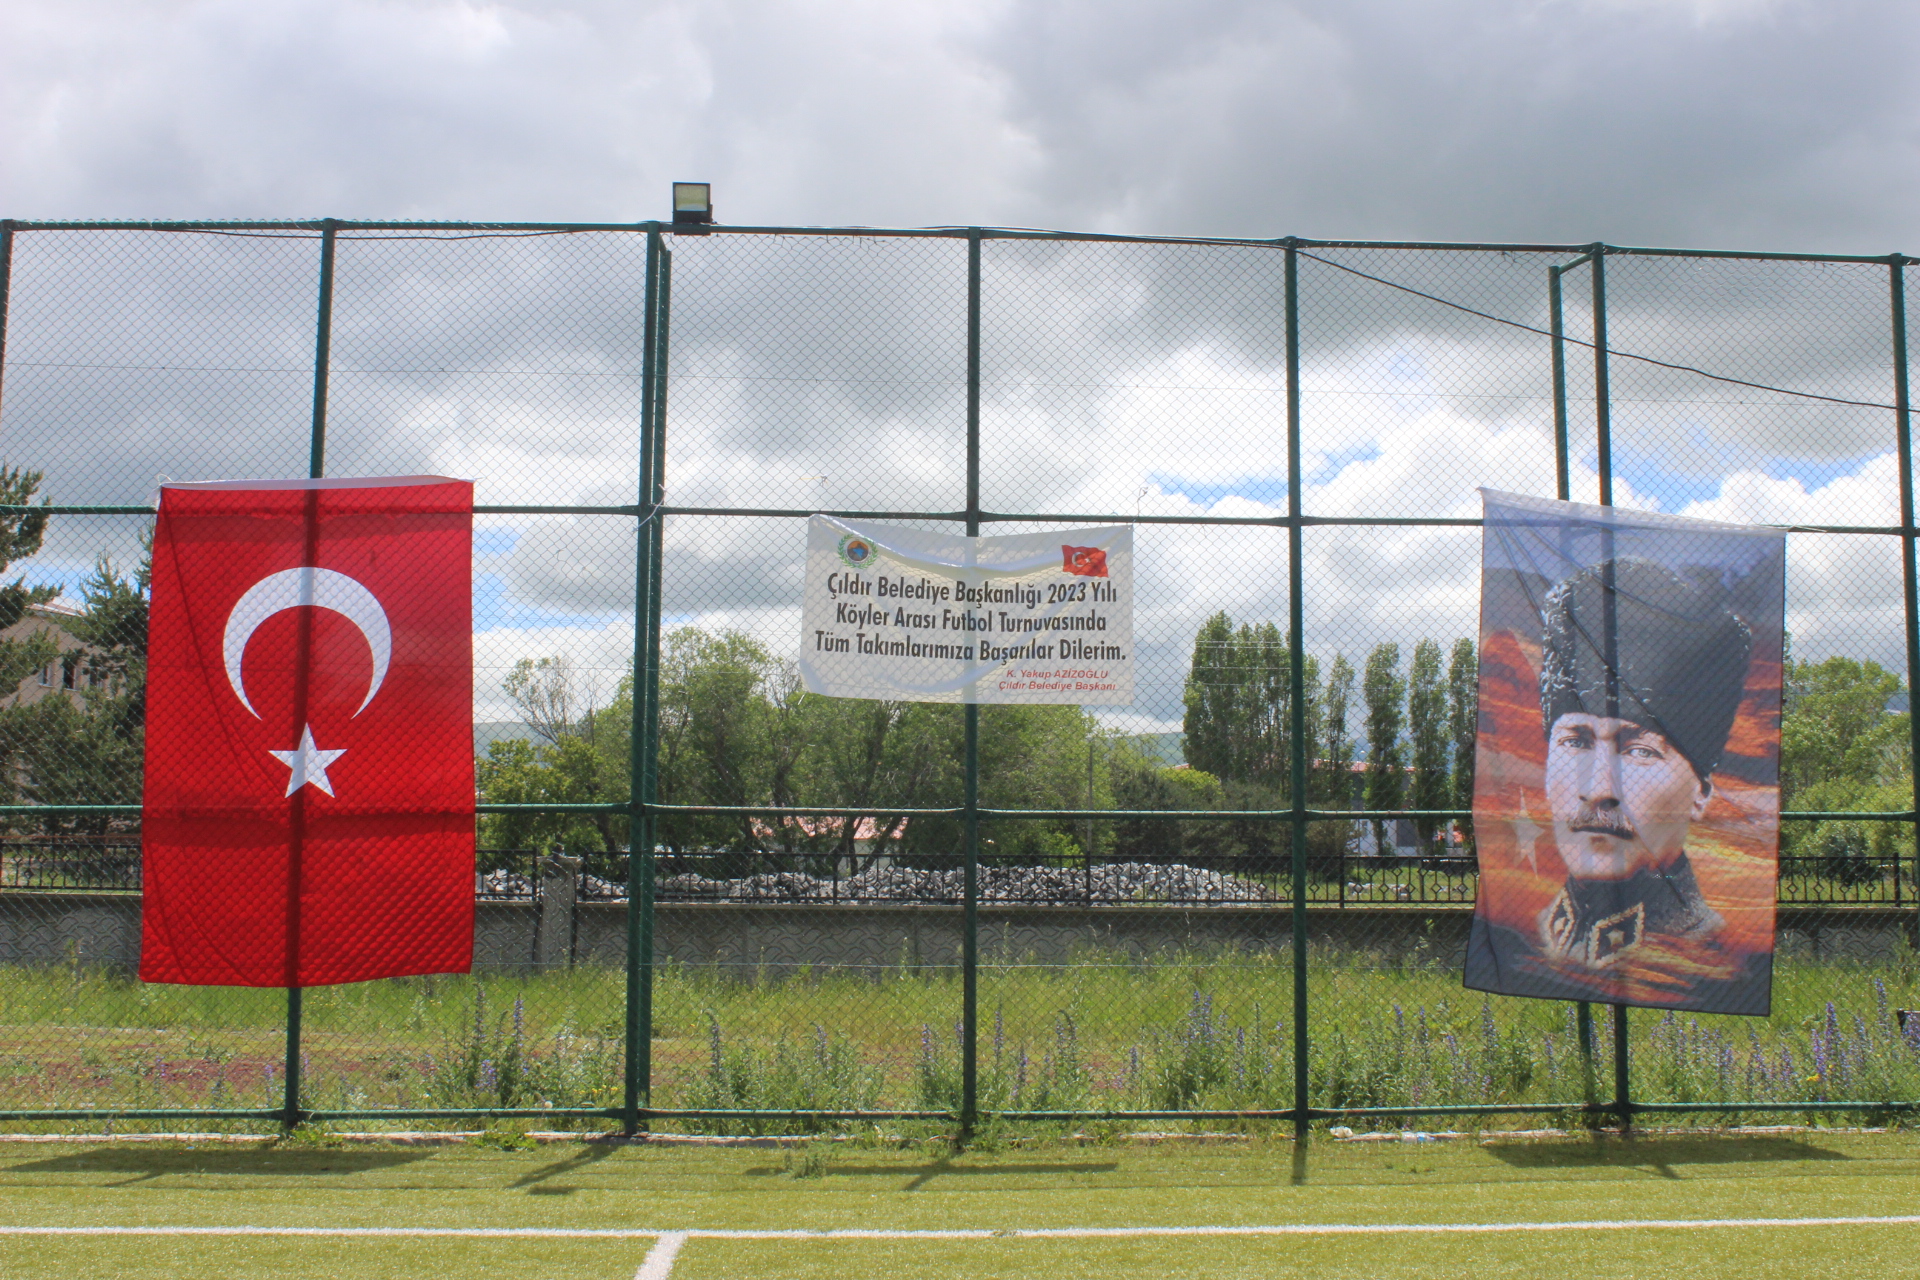 Belediyemizce Düzenlenen Futbol Turnuvasinin Şampiyonu Eşmepinar Köyü Tebrik Ederiz